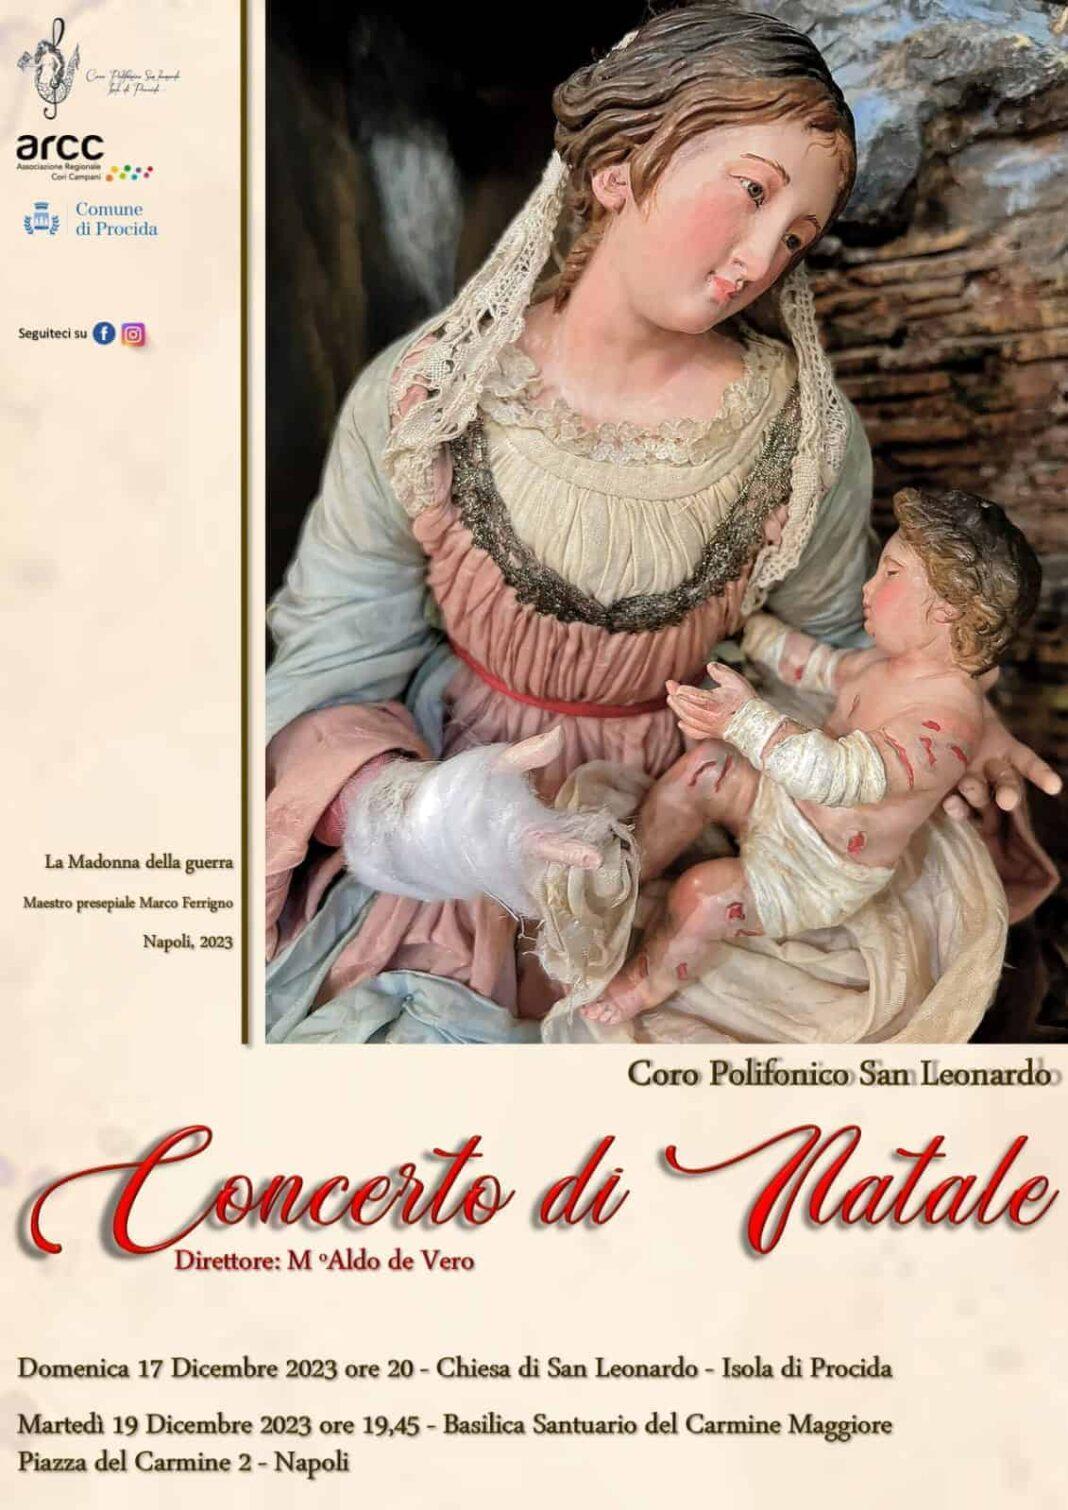 Il Blog di Giò: il Concerto di Natale del Coro Polifonico San Leonardo di Procida